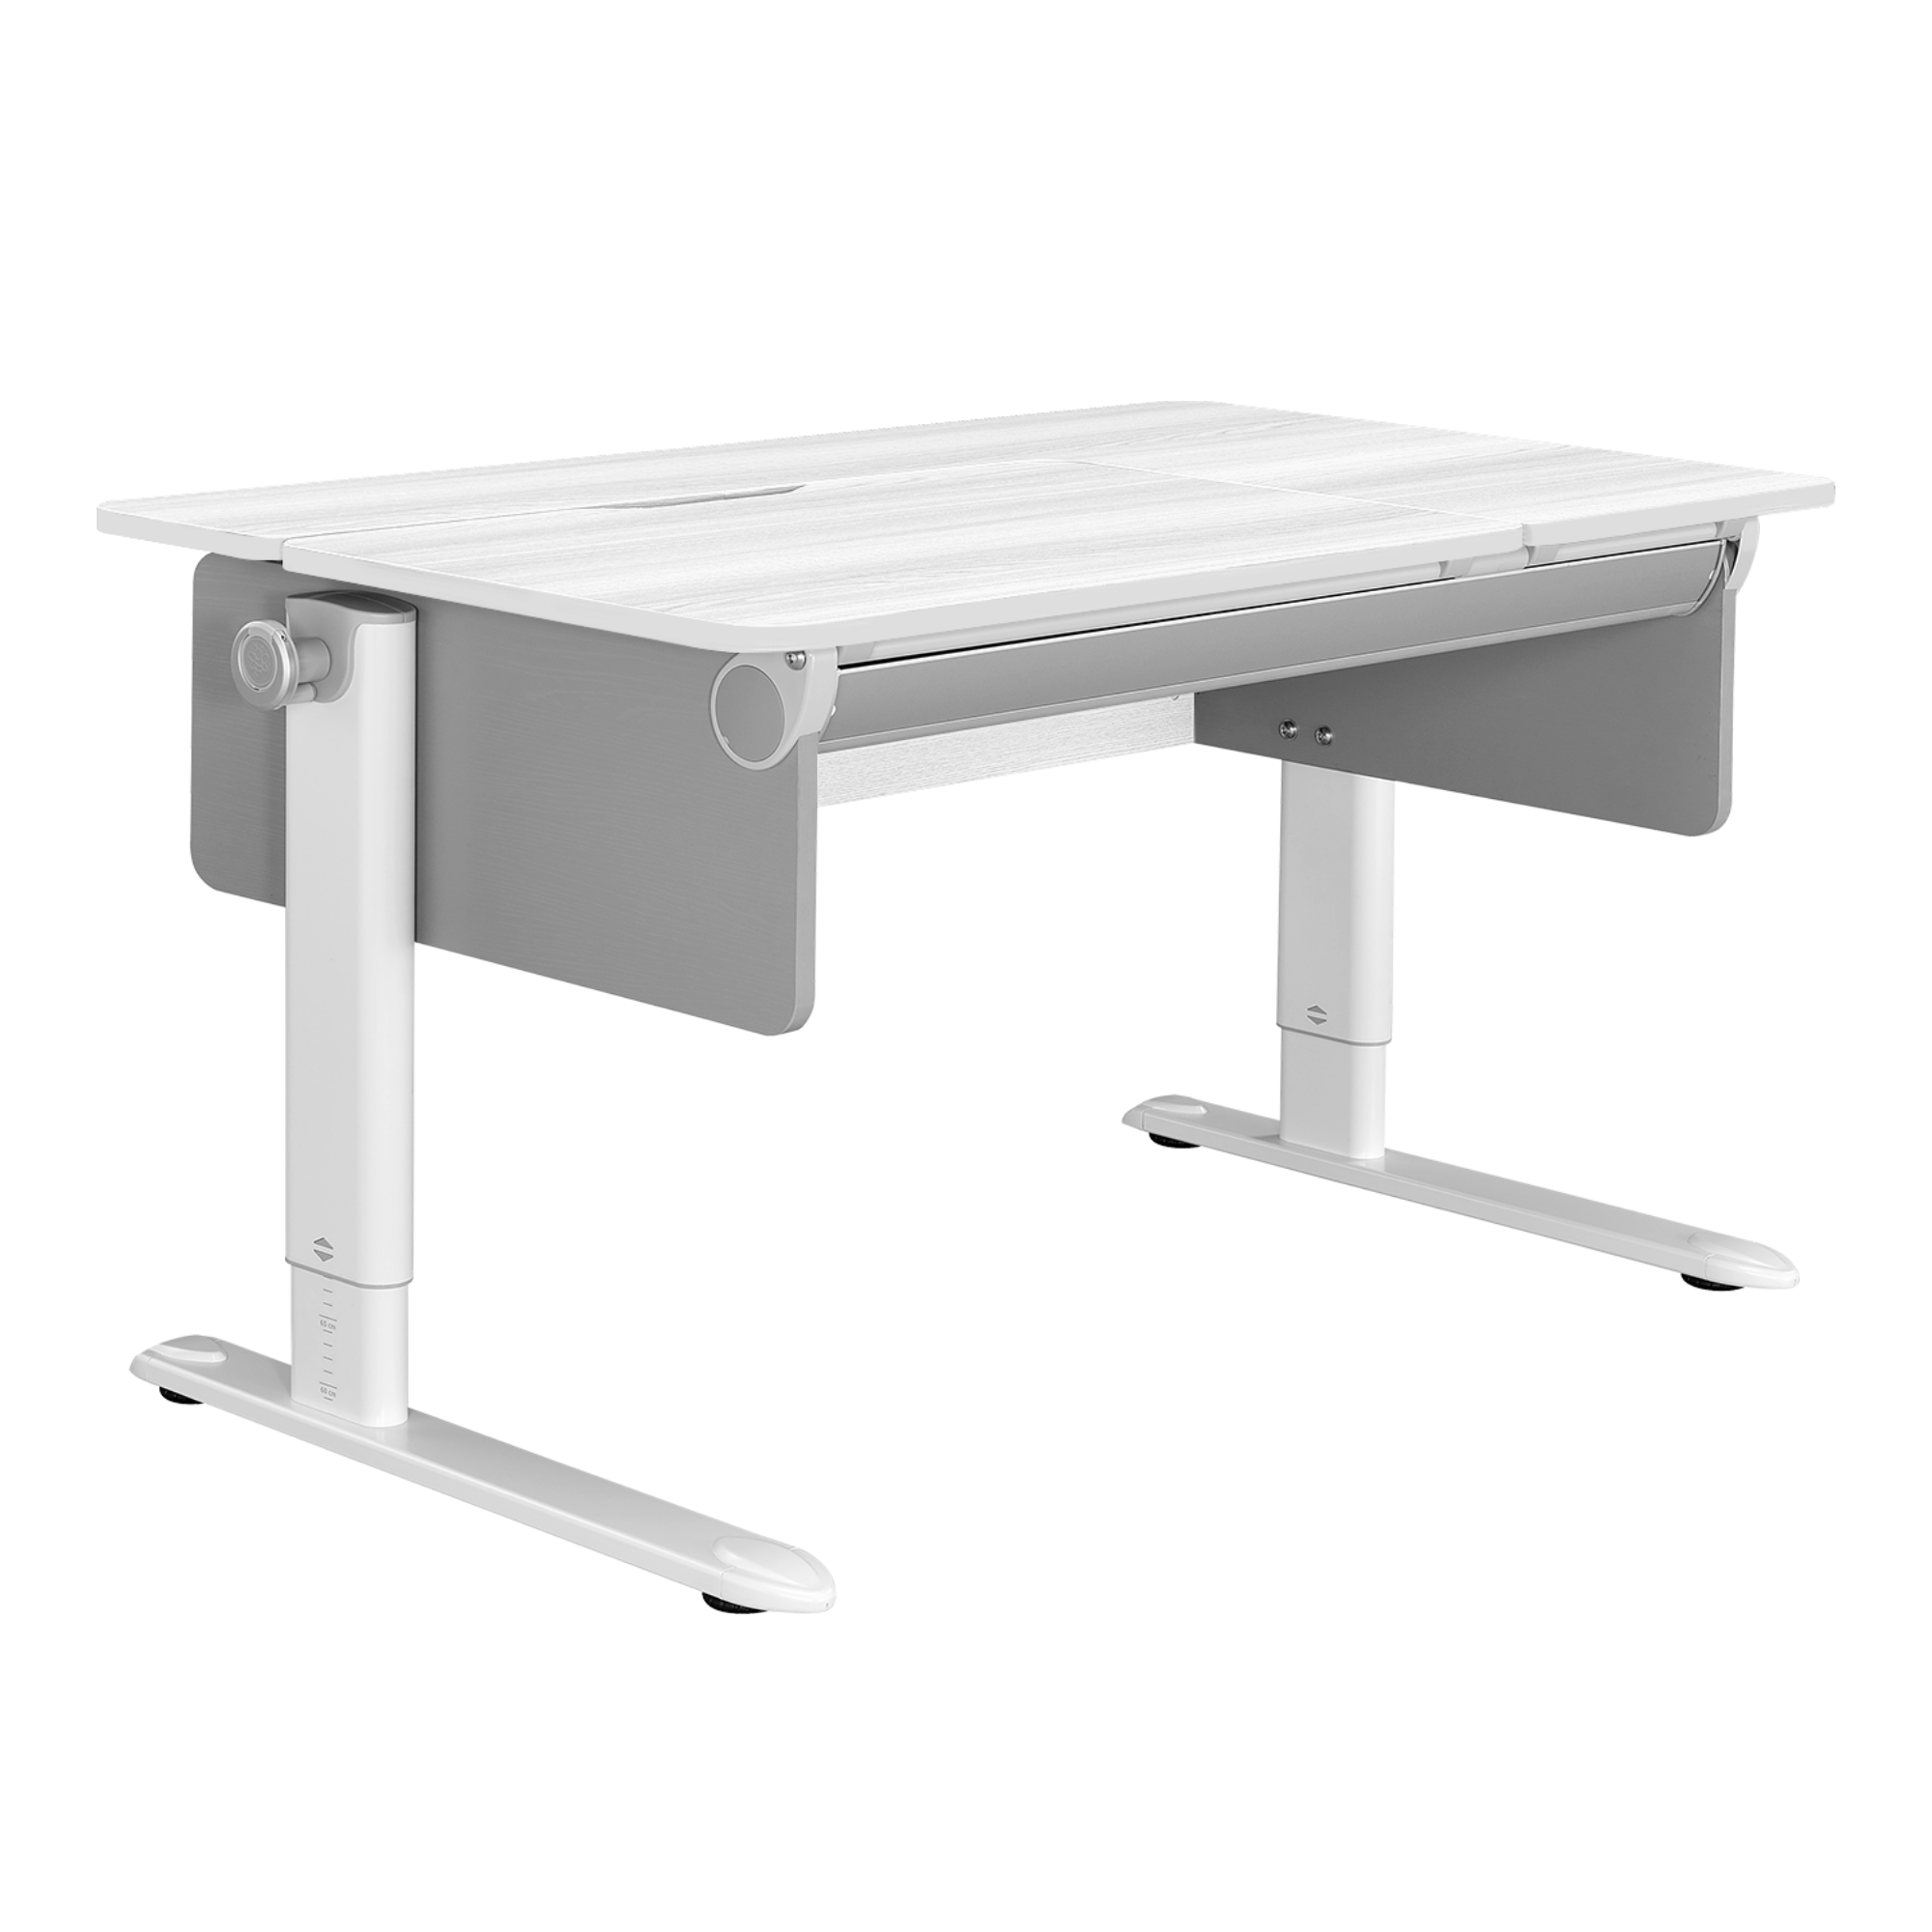 CB-502 Ergonomic L-Shape Adjustable Kids Desk - Furniture.Agency